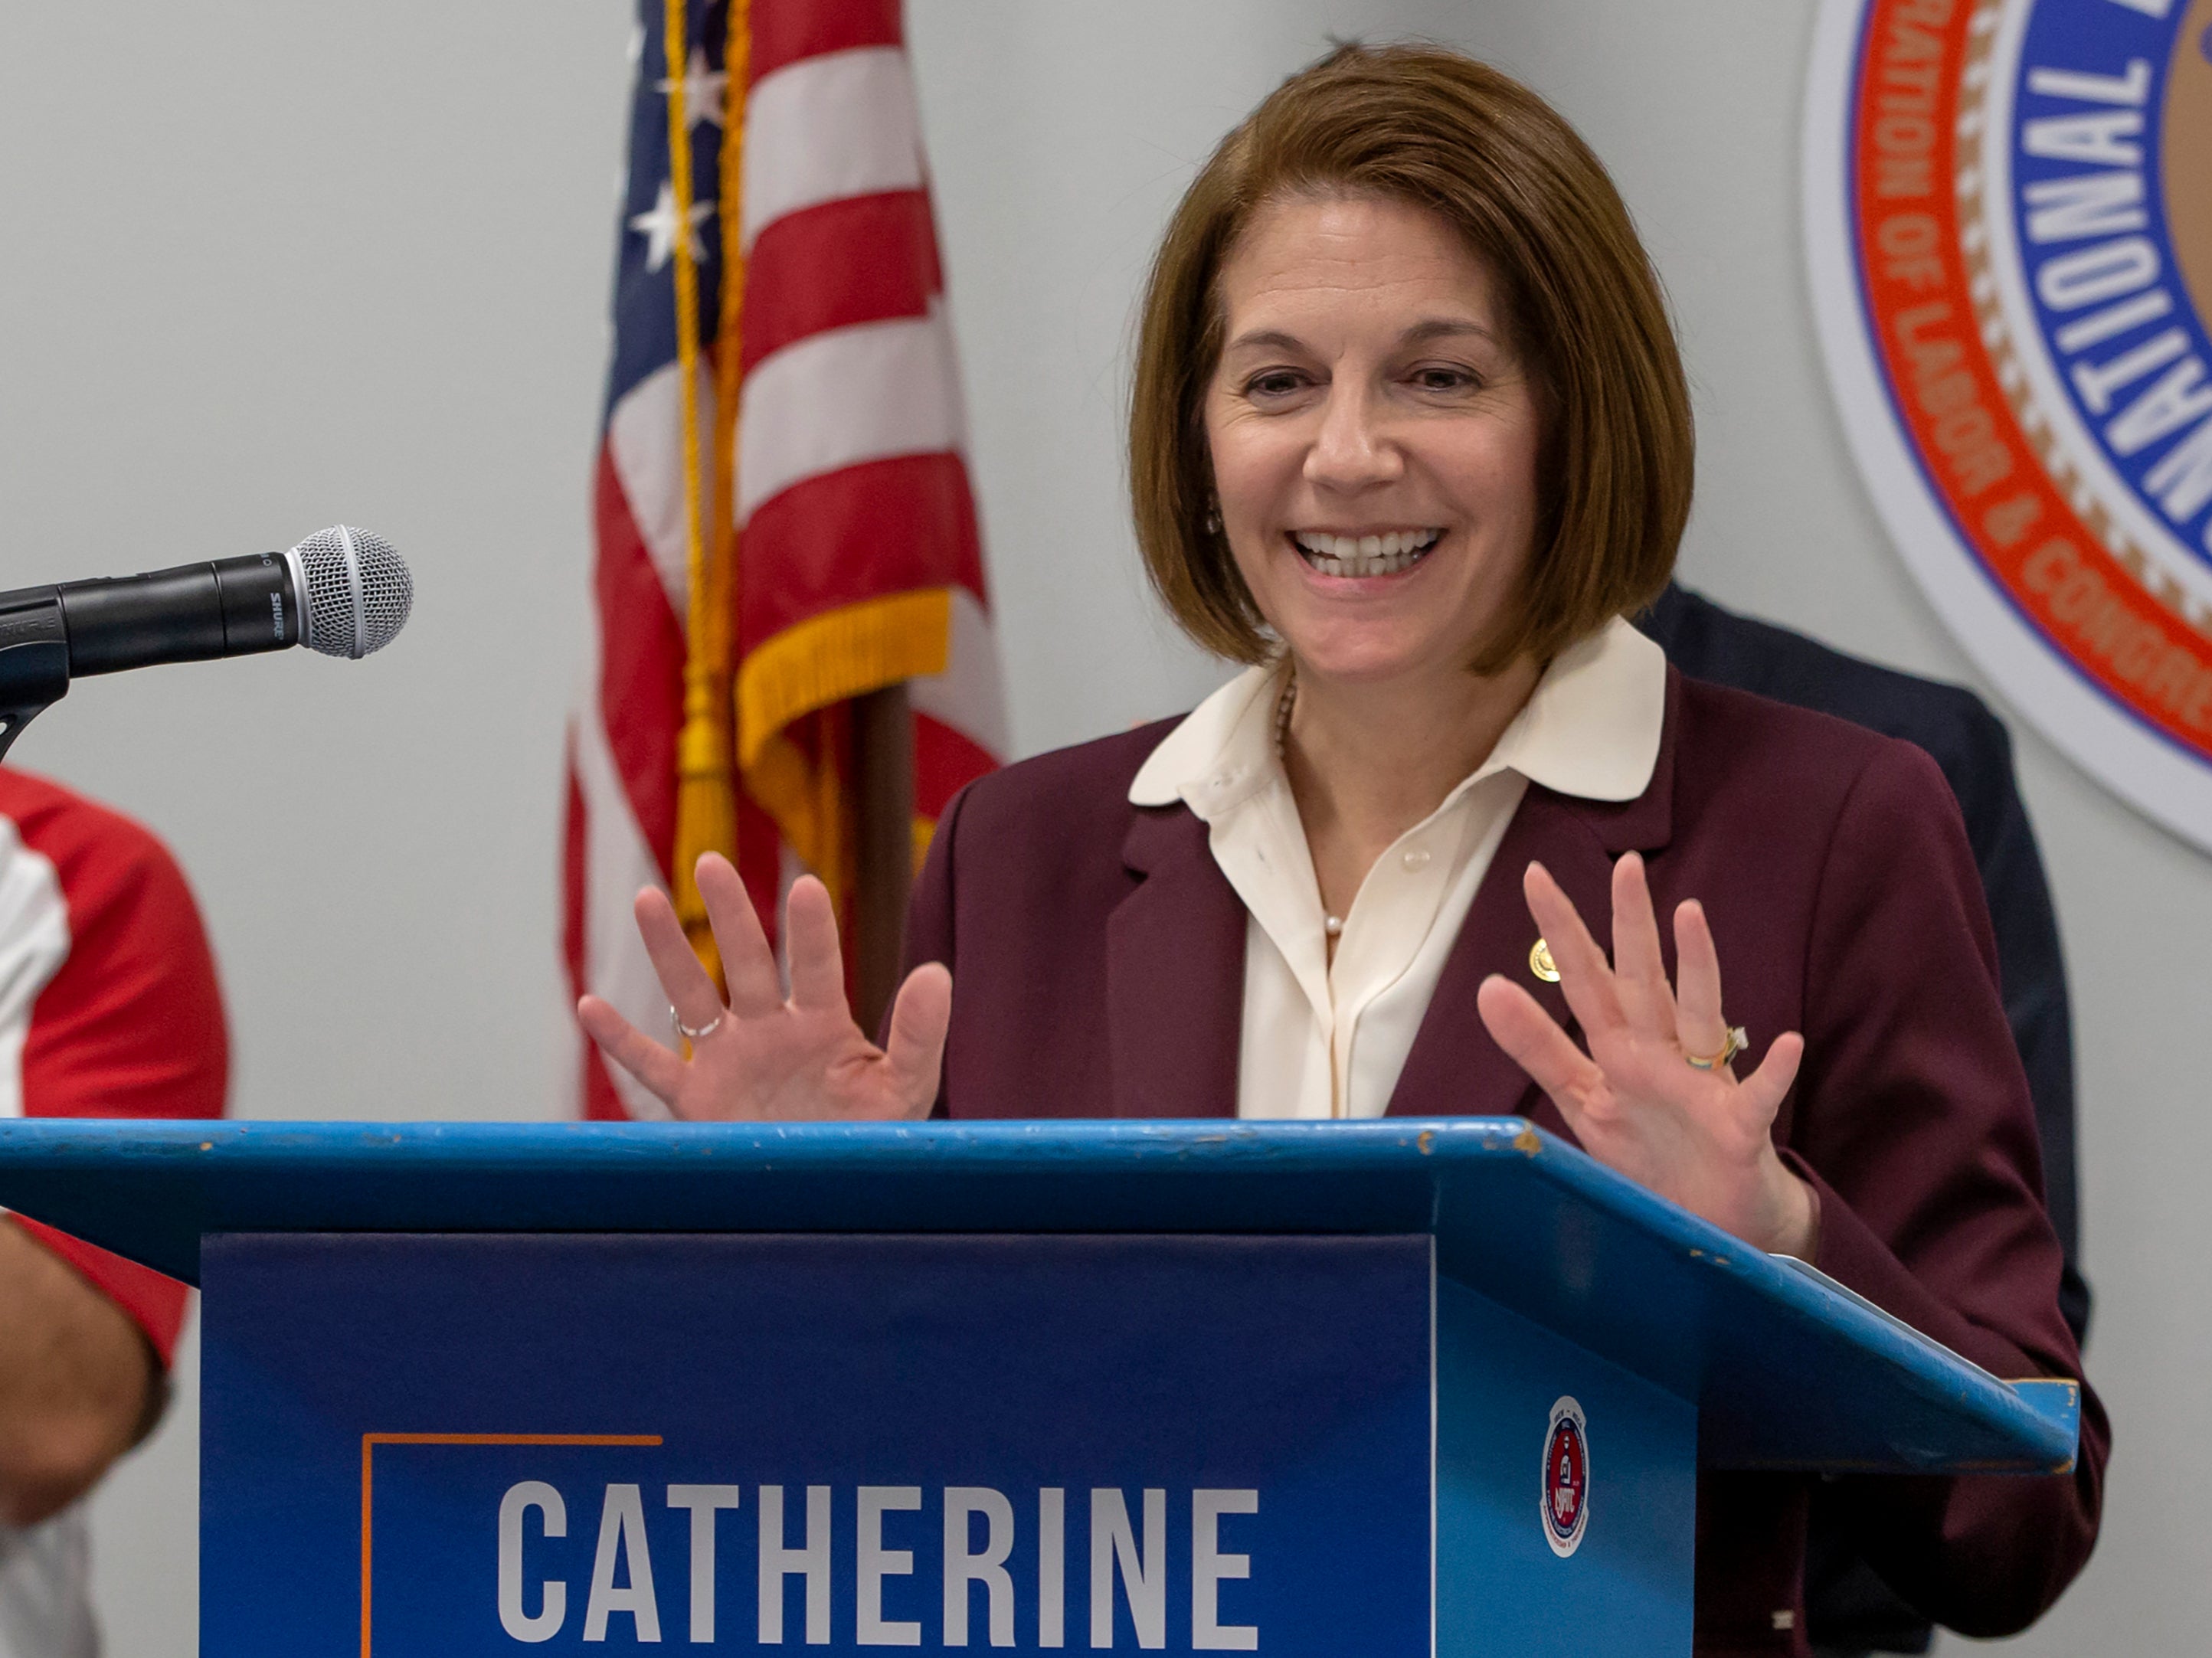 Nevada Senator Catherine Cortez Masto on the campaign trail